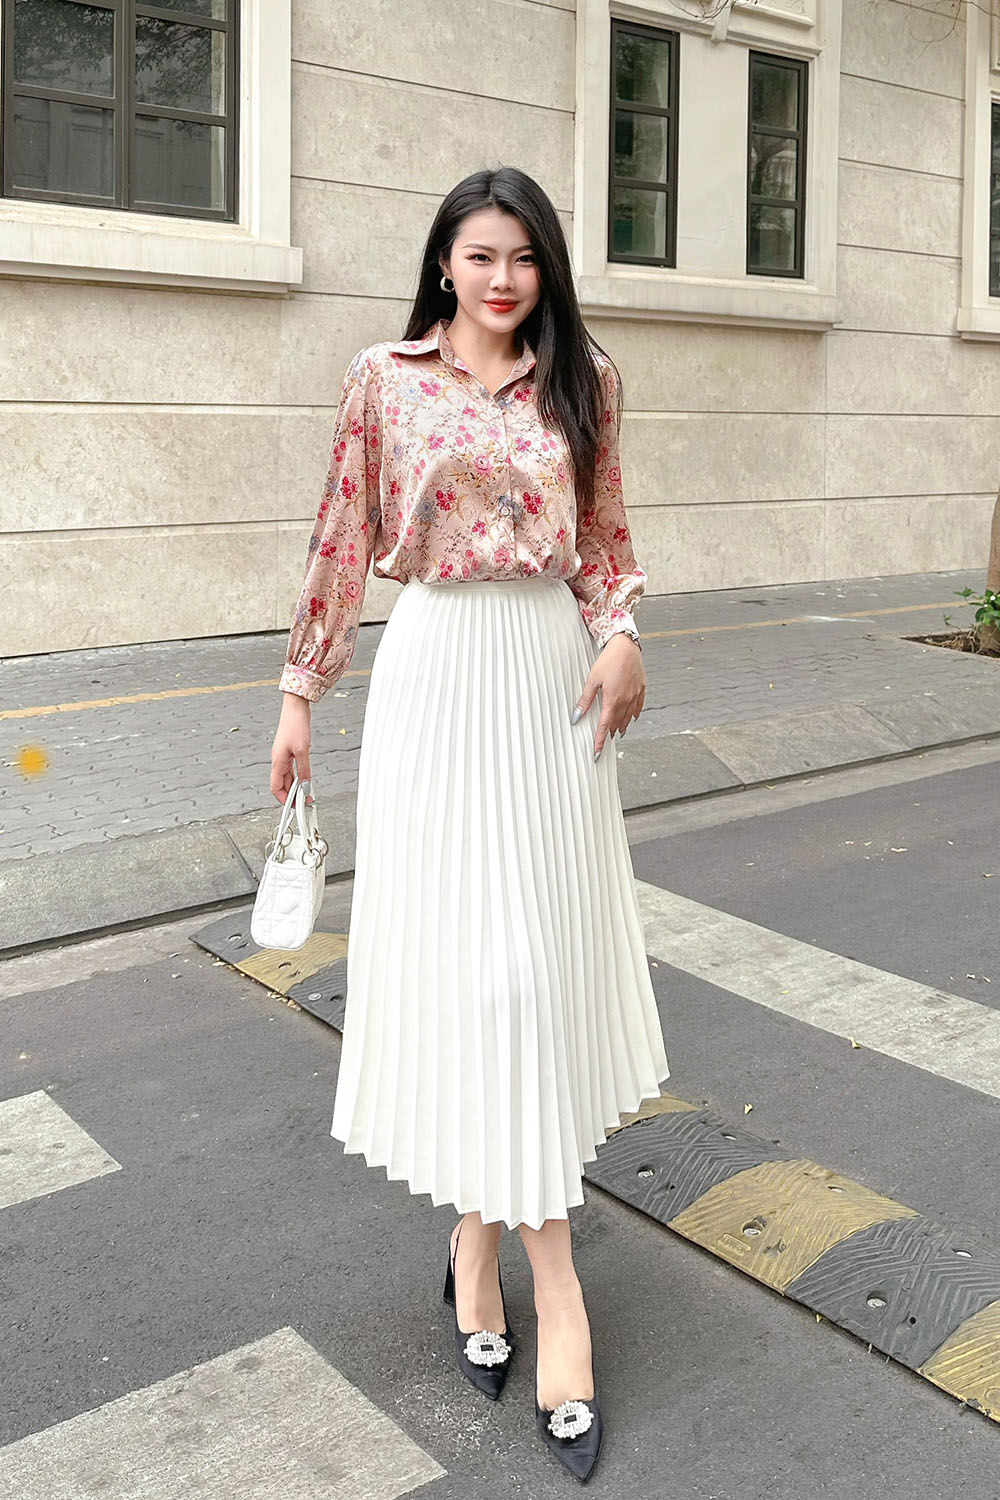 Phối đồ với chân váy dài cùng top 21+ outfit xinh đúng điệu - Shopee Blog